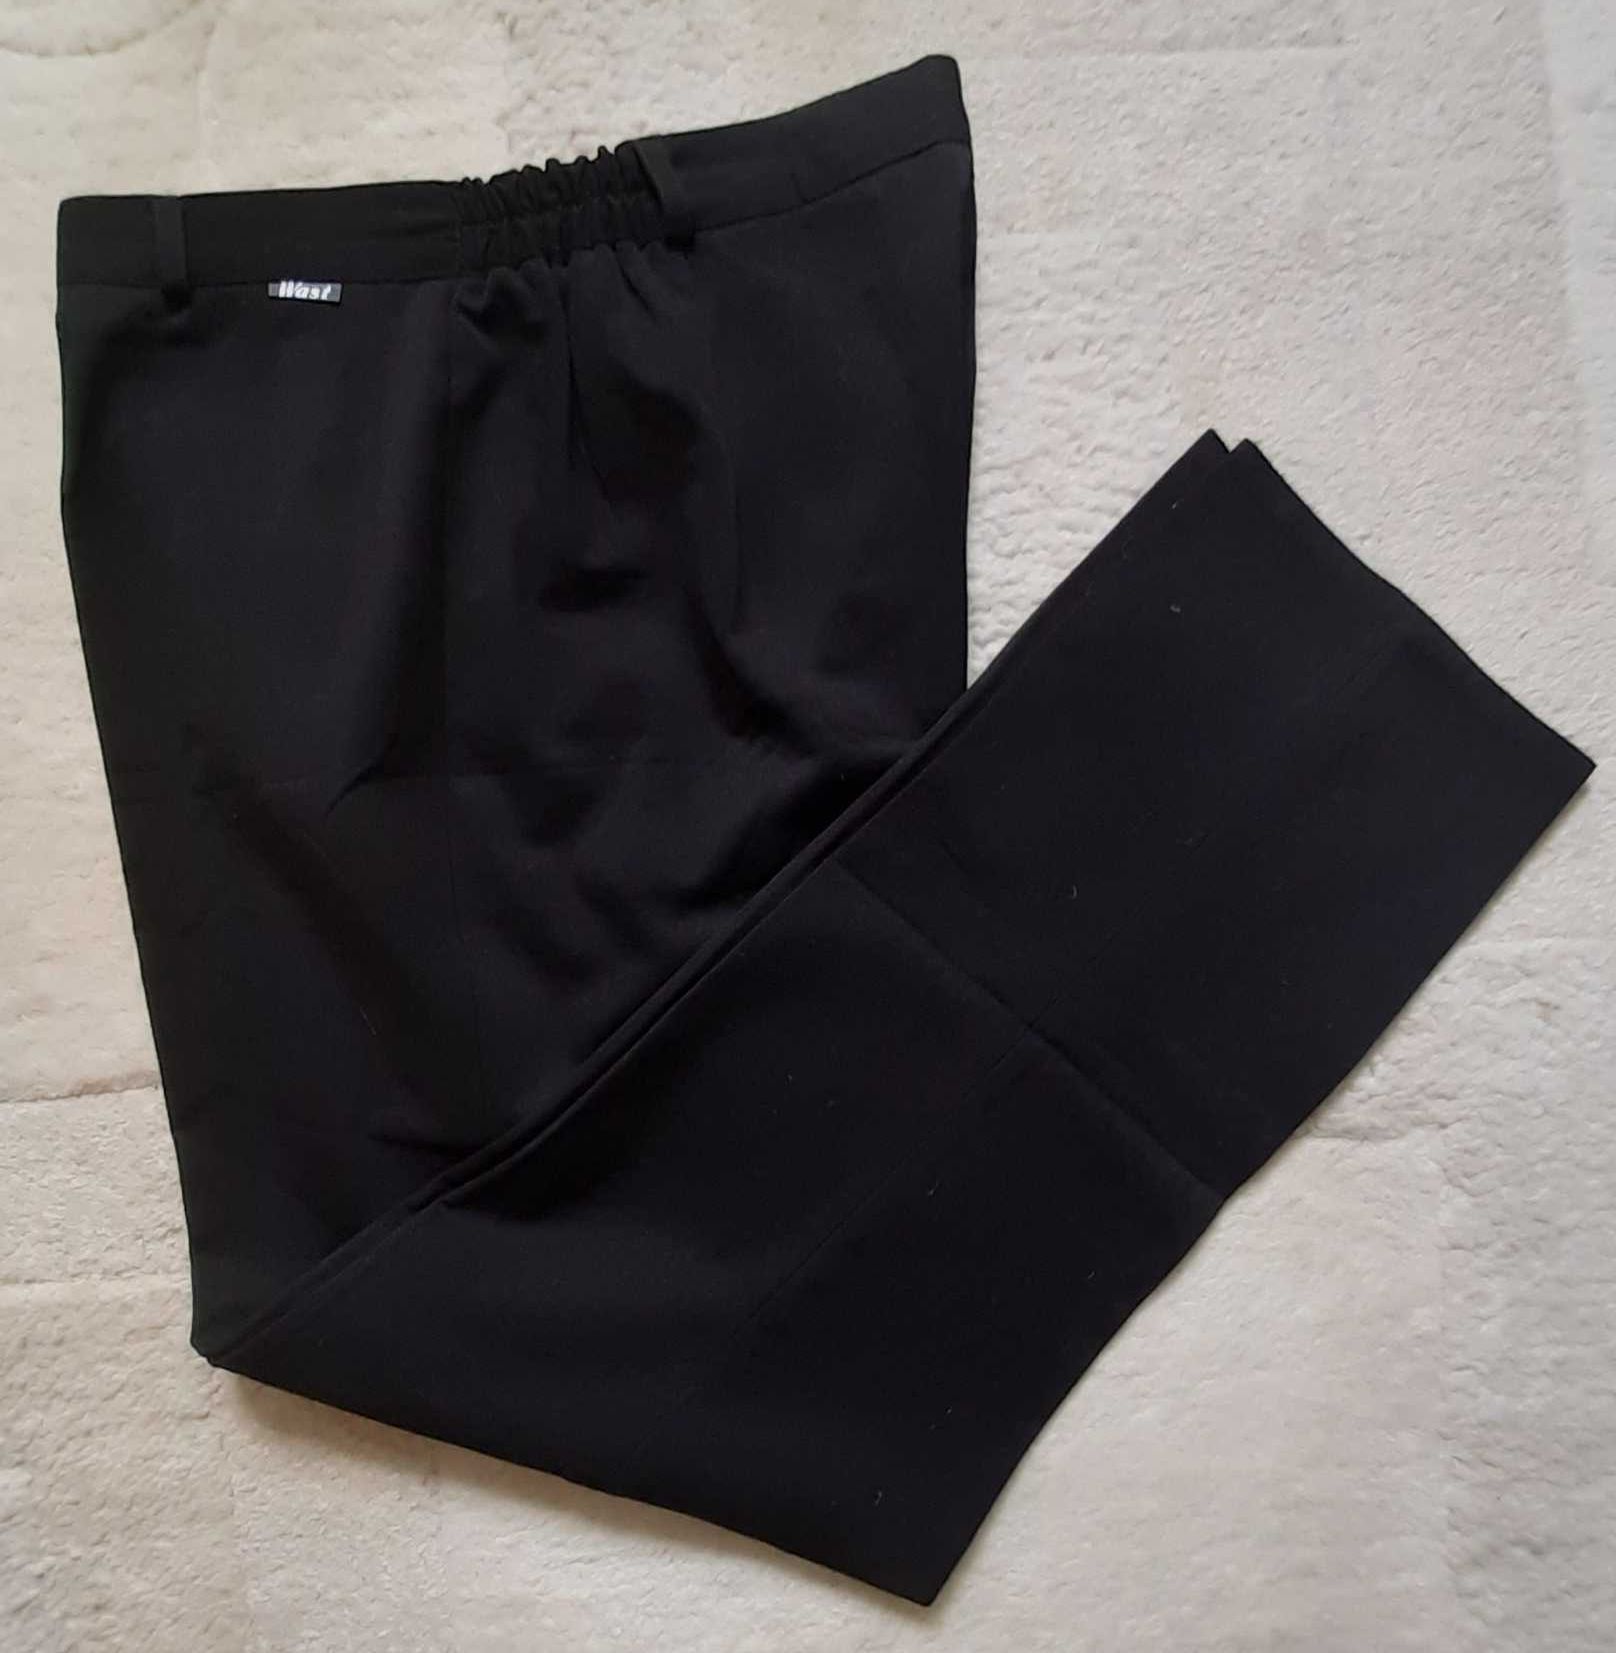 Damskie polskie czarne spodnie Wast, rozmiar 48